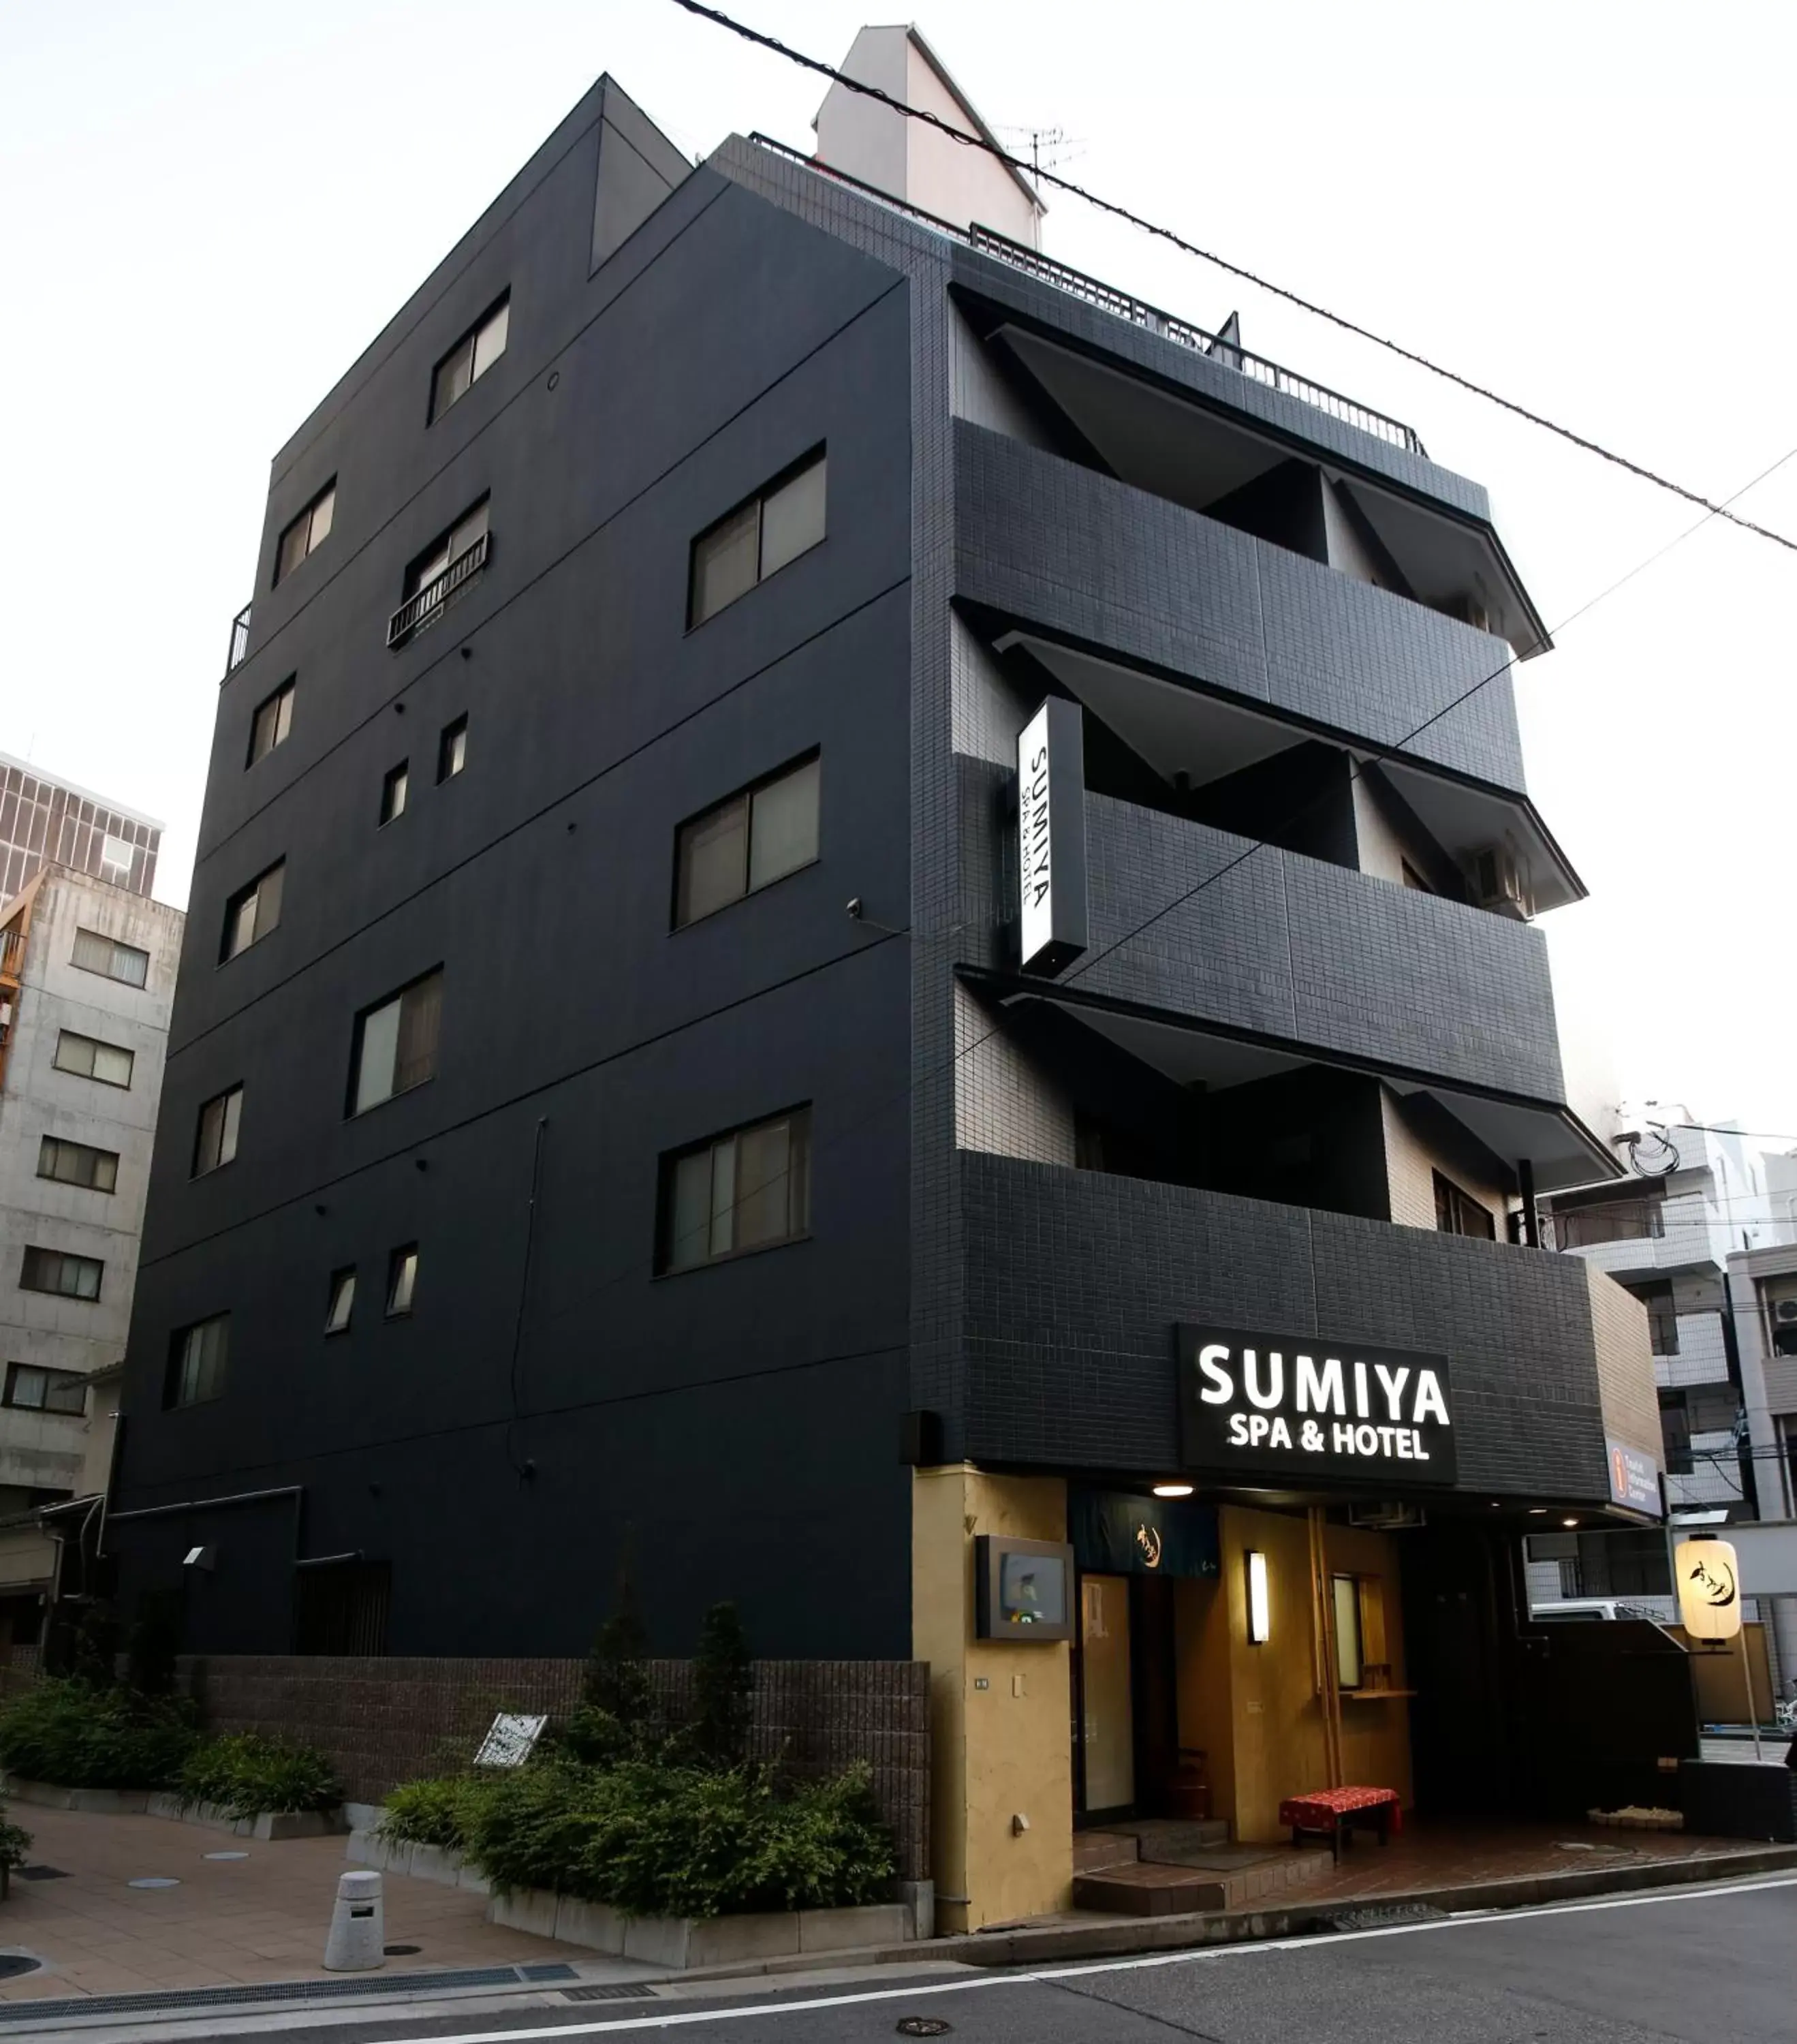 Facade/entrance, Property Building in Sumiya Spa & Hotel